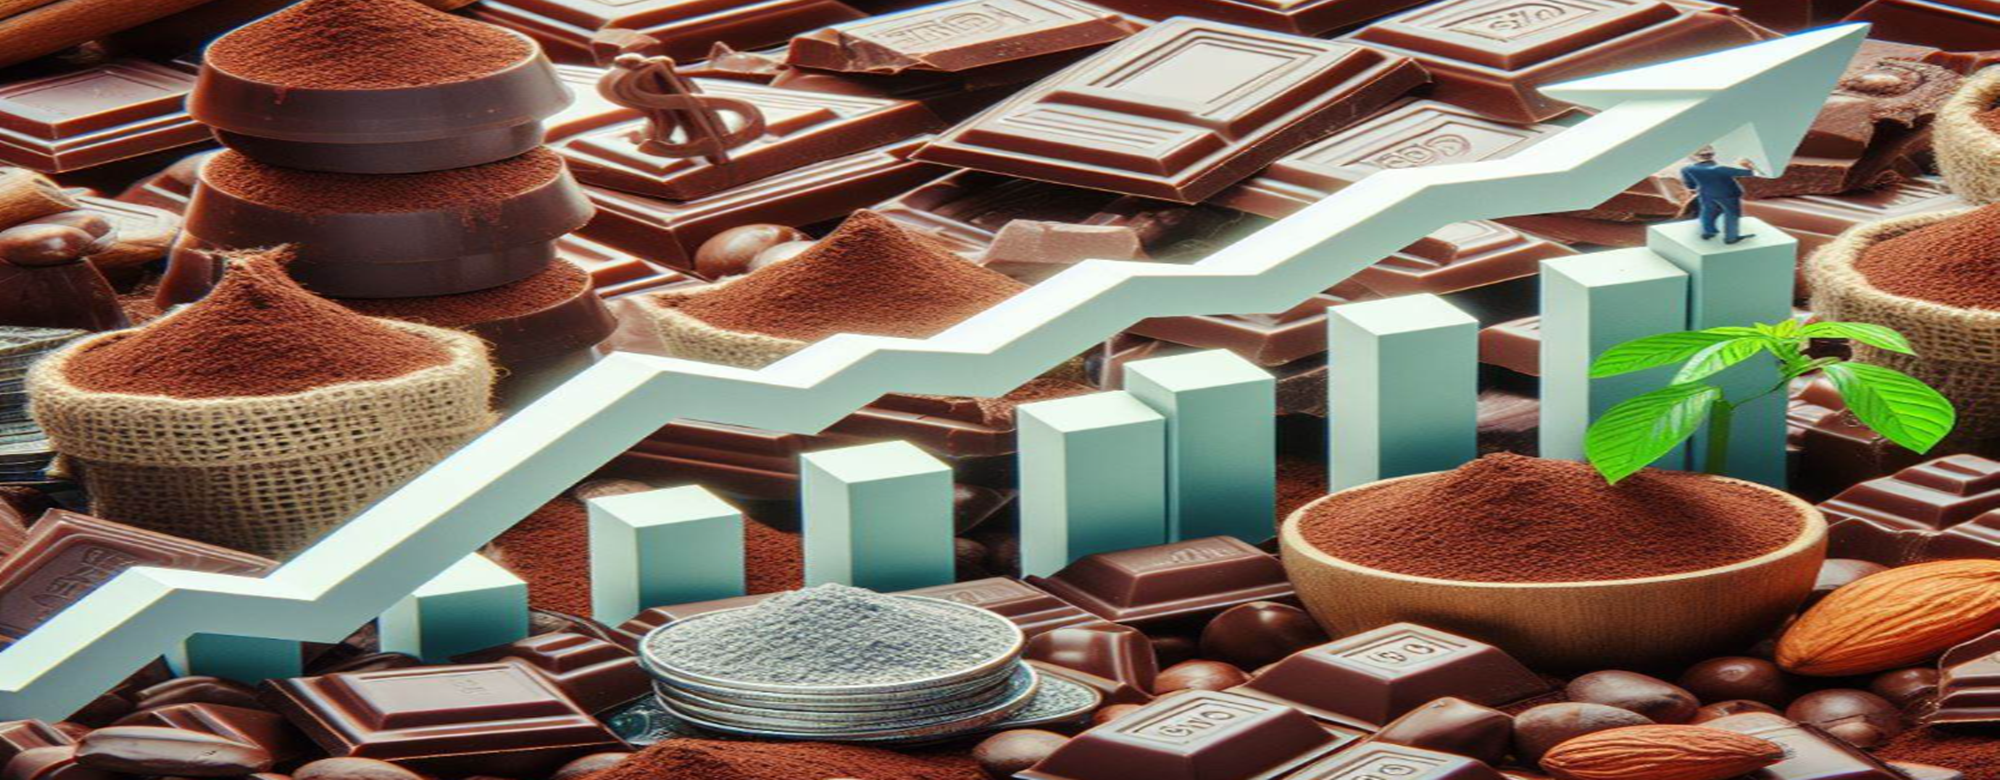 금값 된 초콜릿…초코플레이션 투자 어디가 달달할까 